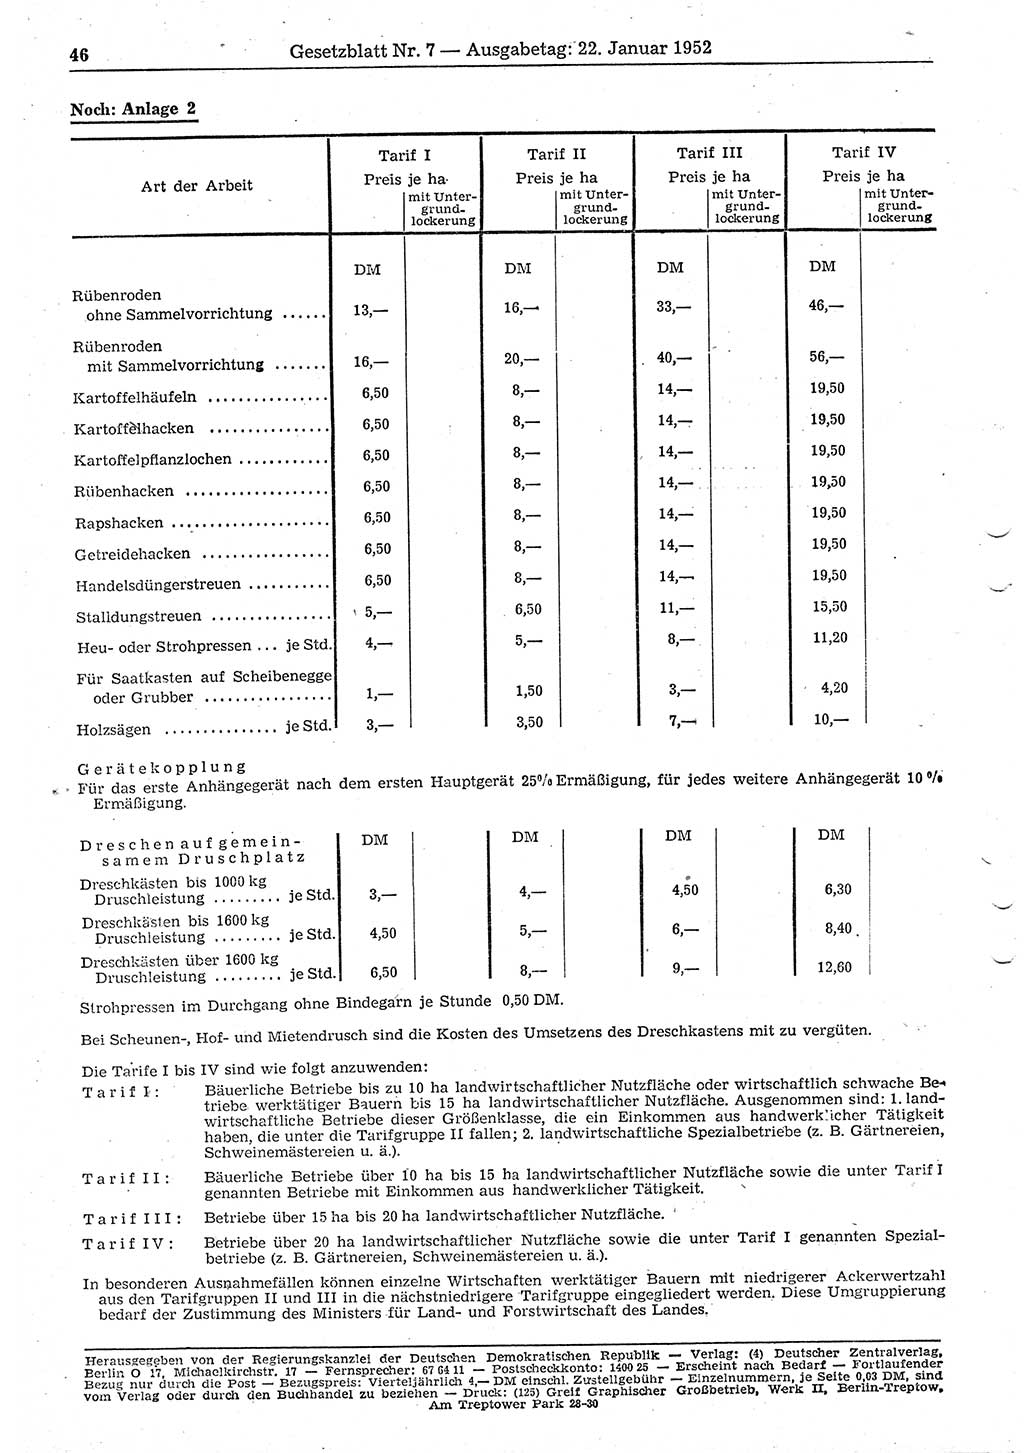 Gesetzblatt (GBl.) der Deutschen Demokratischen Republik (DDR) 1952, Seite 46 (GBl. DDR 1952, S. 46)